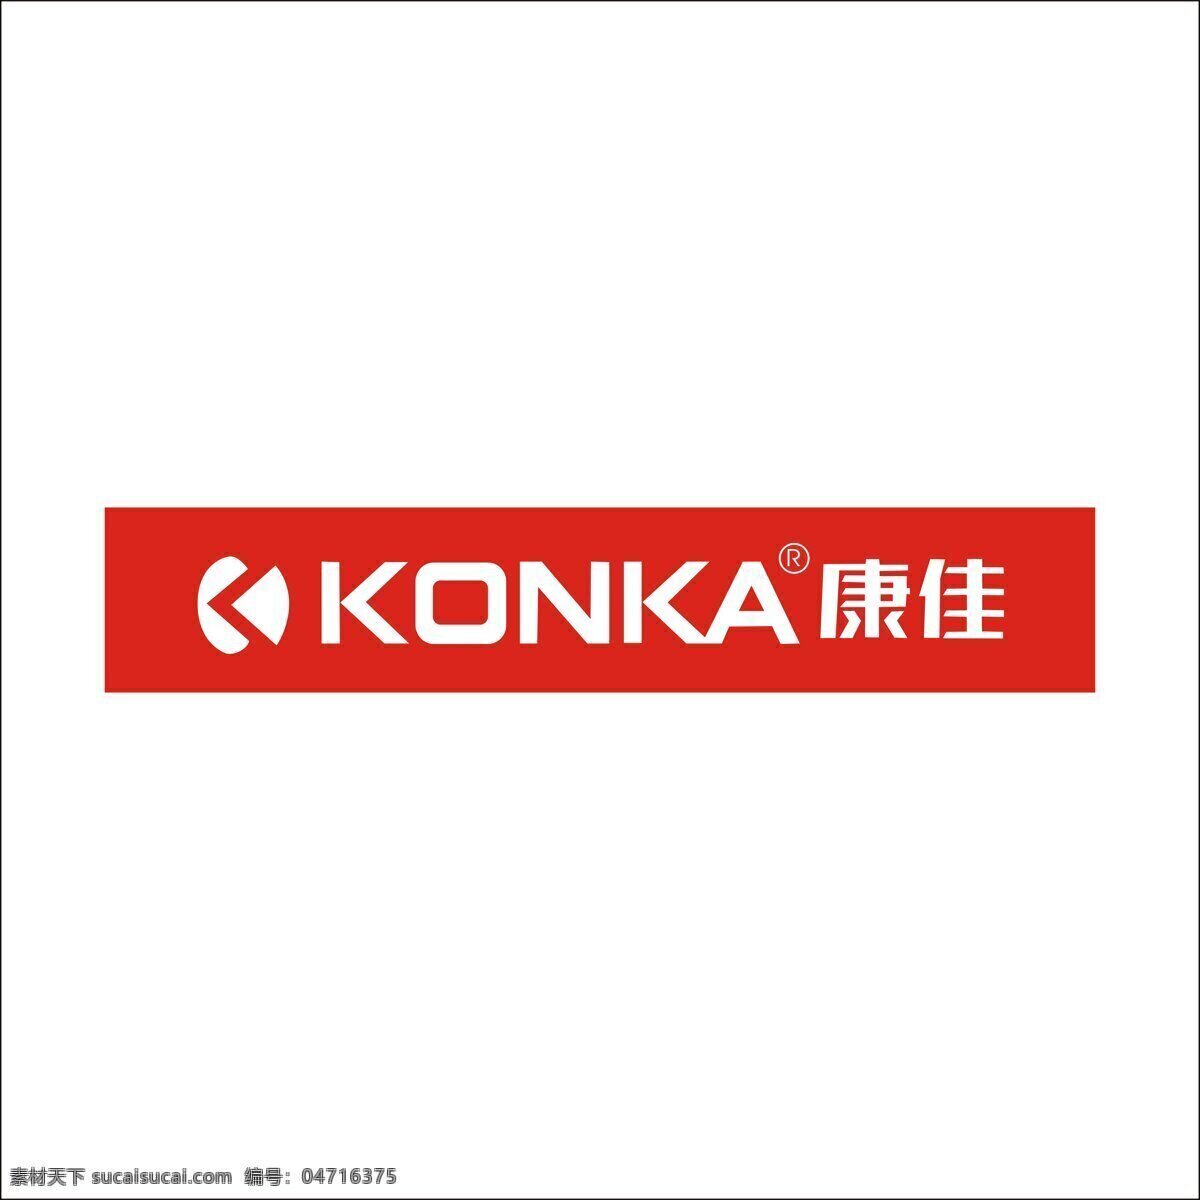 手机logo 康佳 标志 logo 白色 红色 手机标志 康佳手机标志 konka 矢量图 其他矢量图